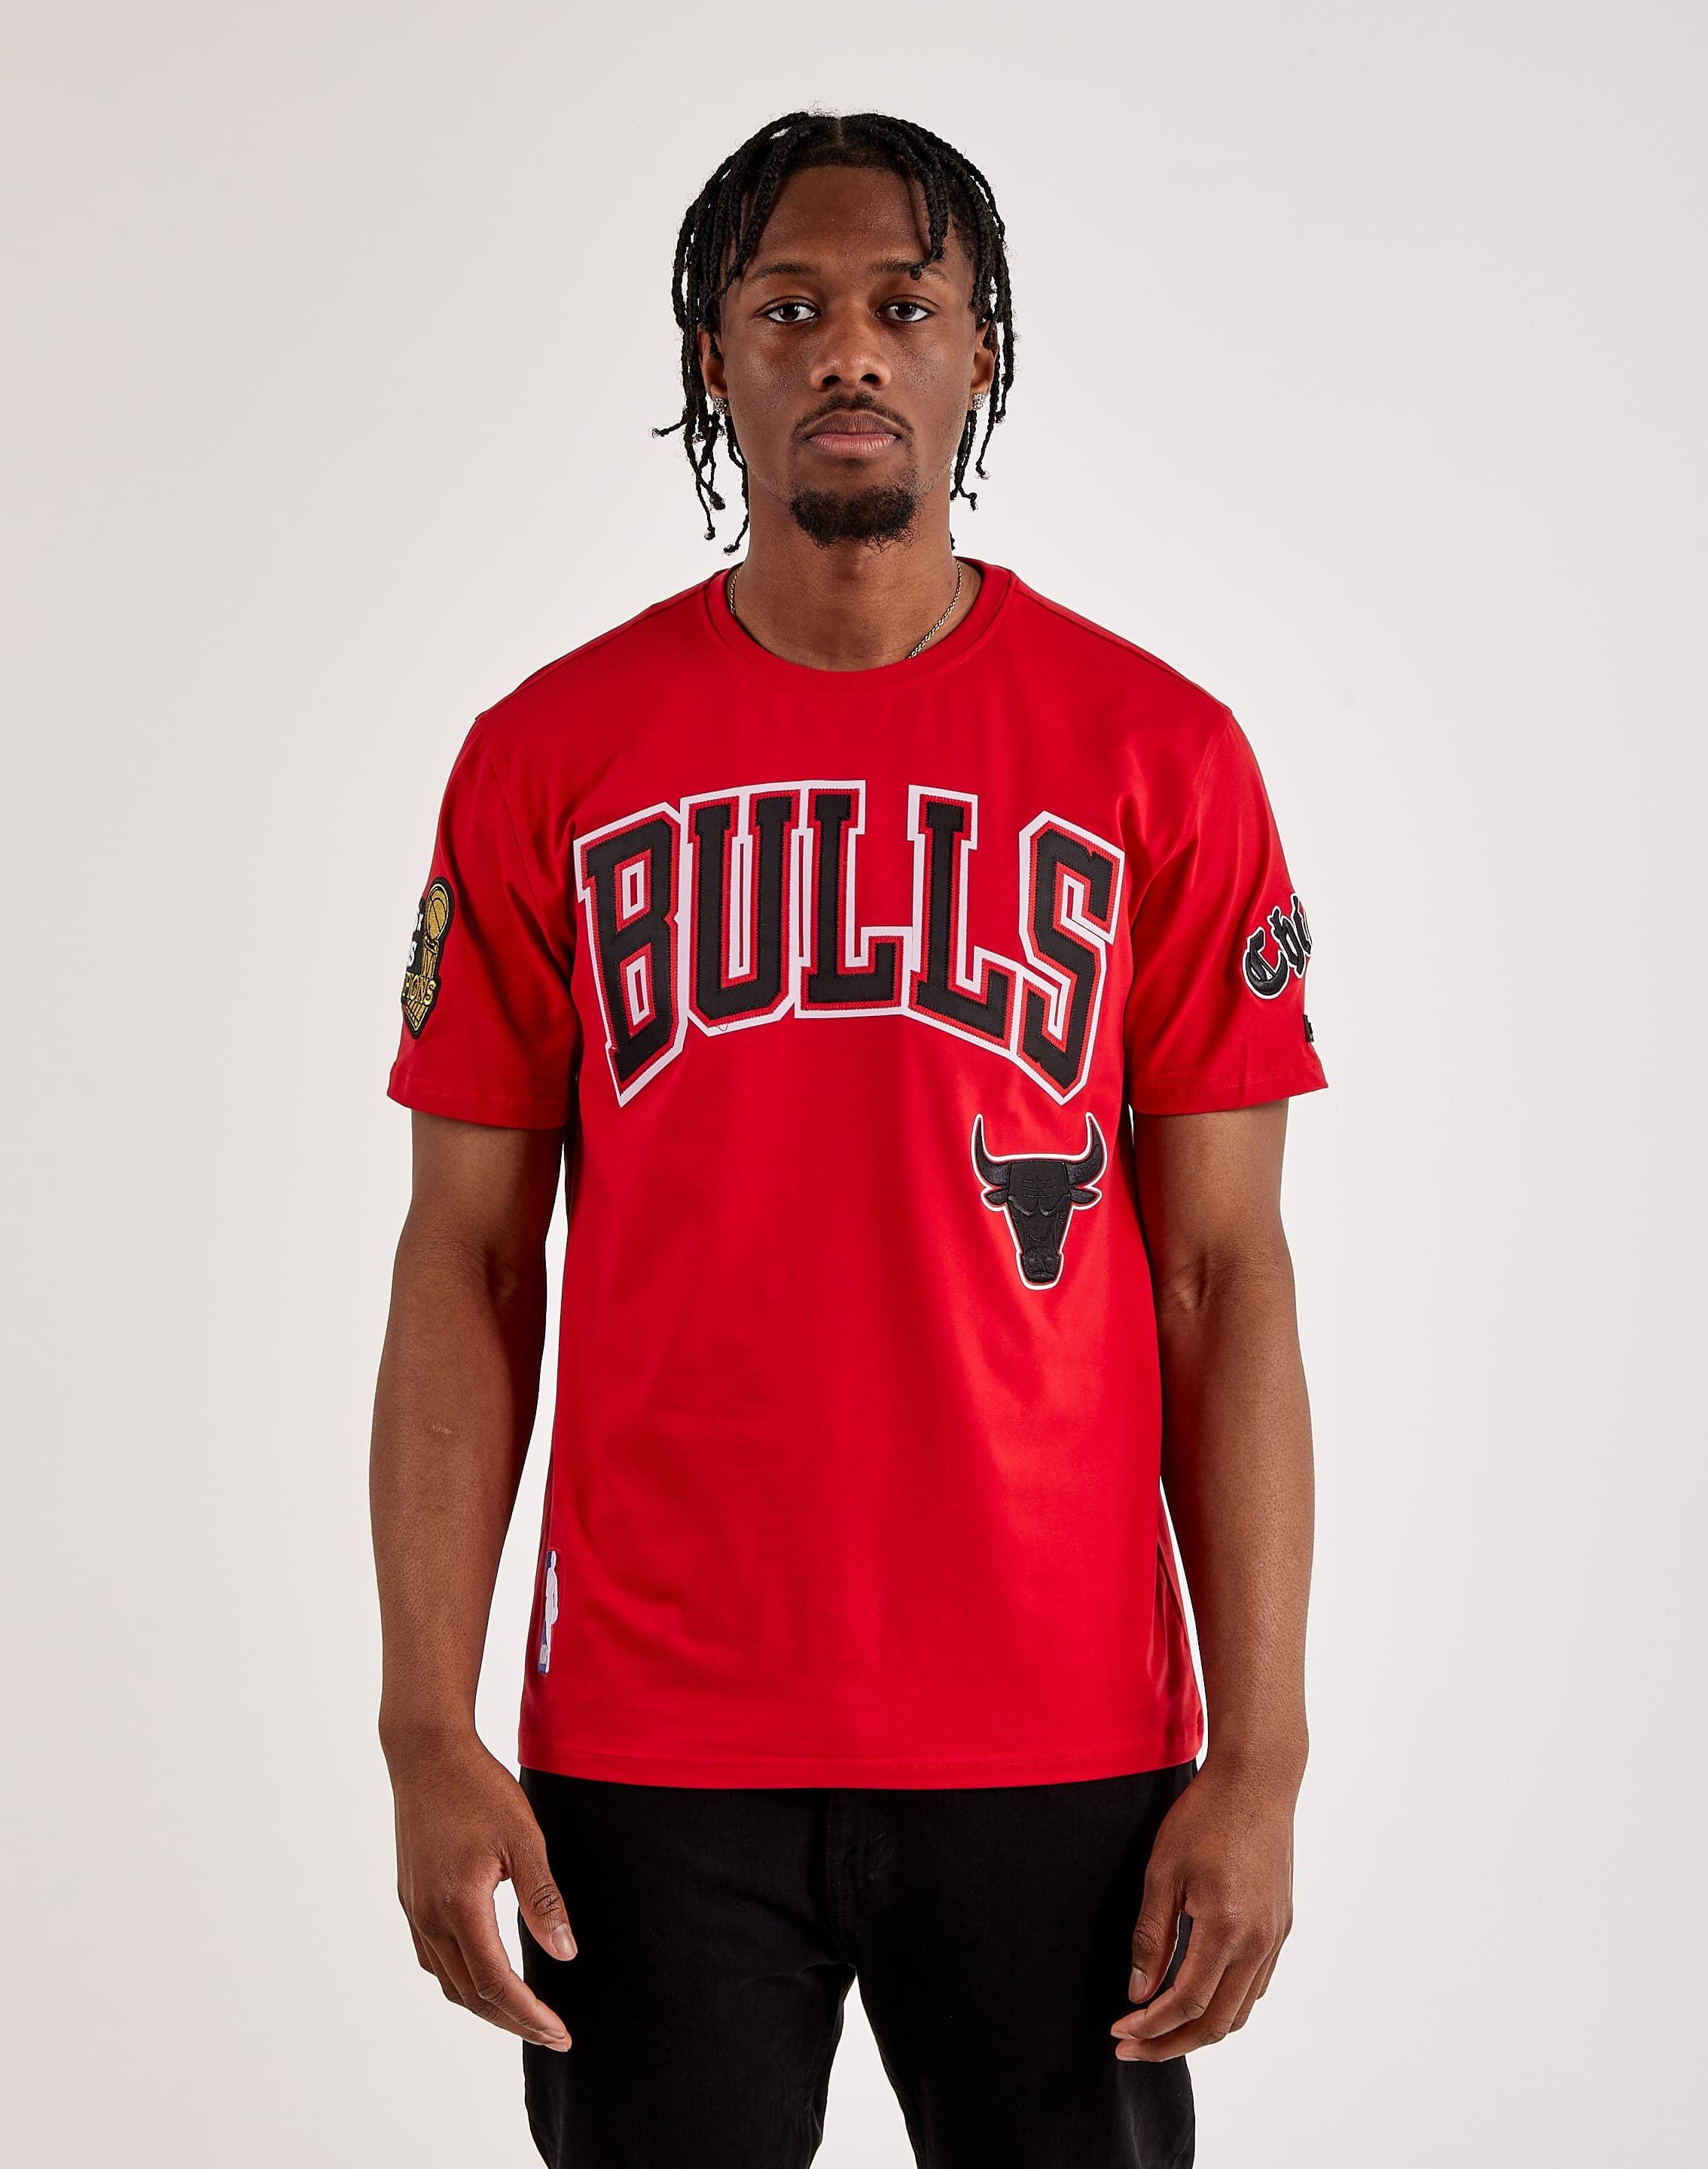 Chicago Bulls Apparel & Accessories